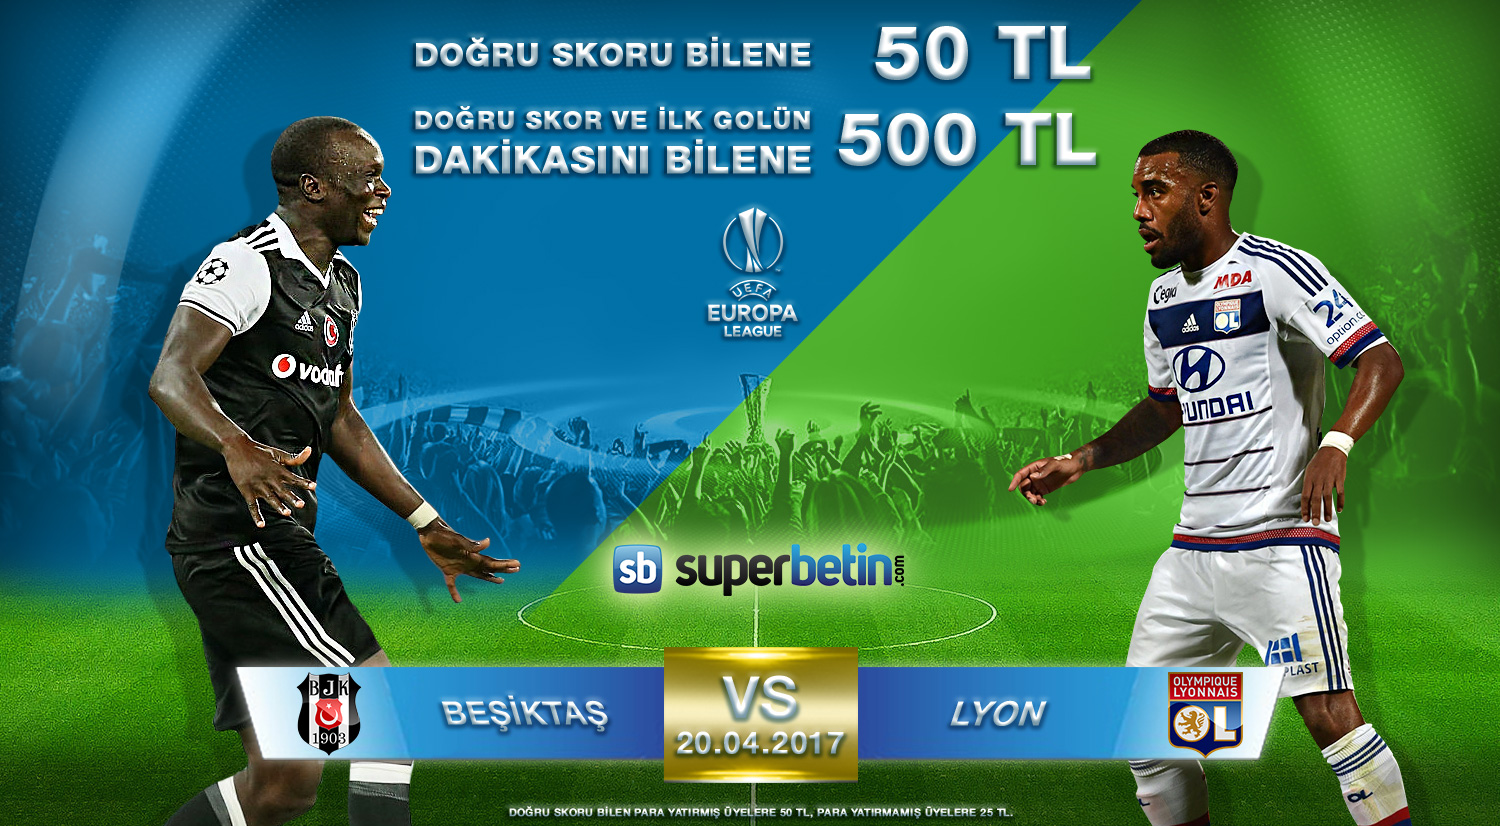 Beşiktaş Lyon Skor Tahmin Kazananları Bet